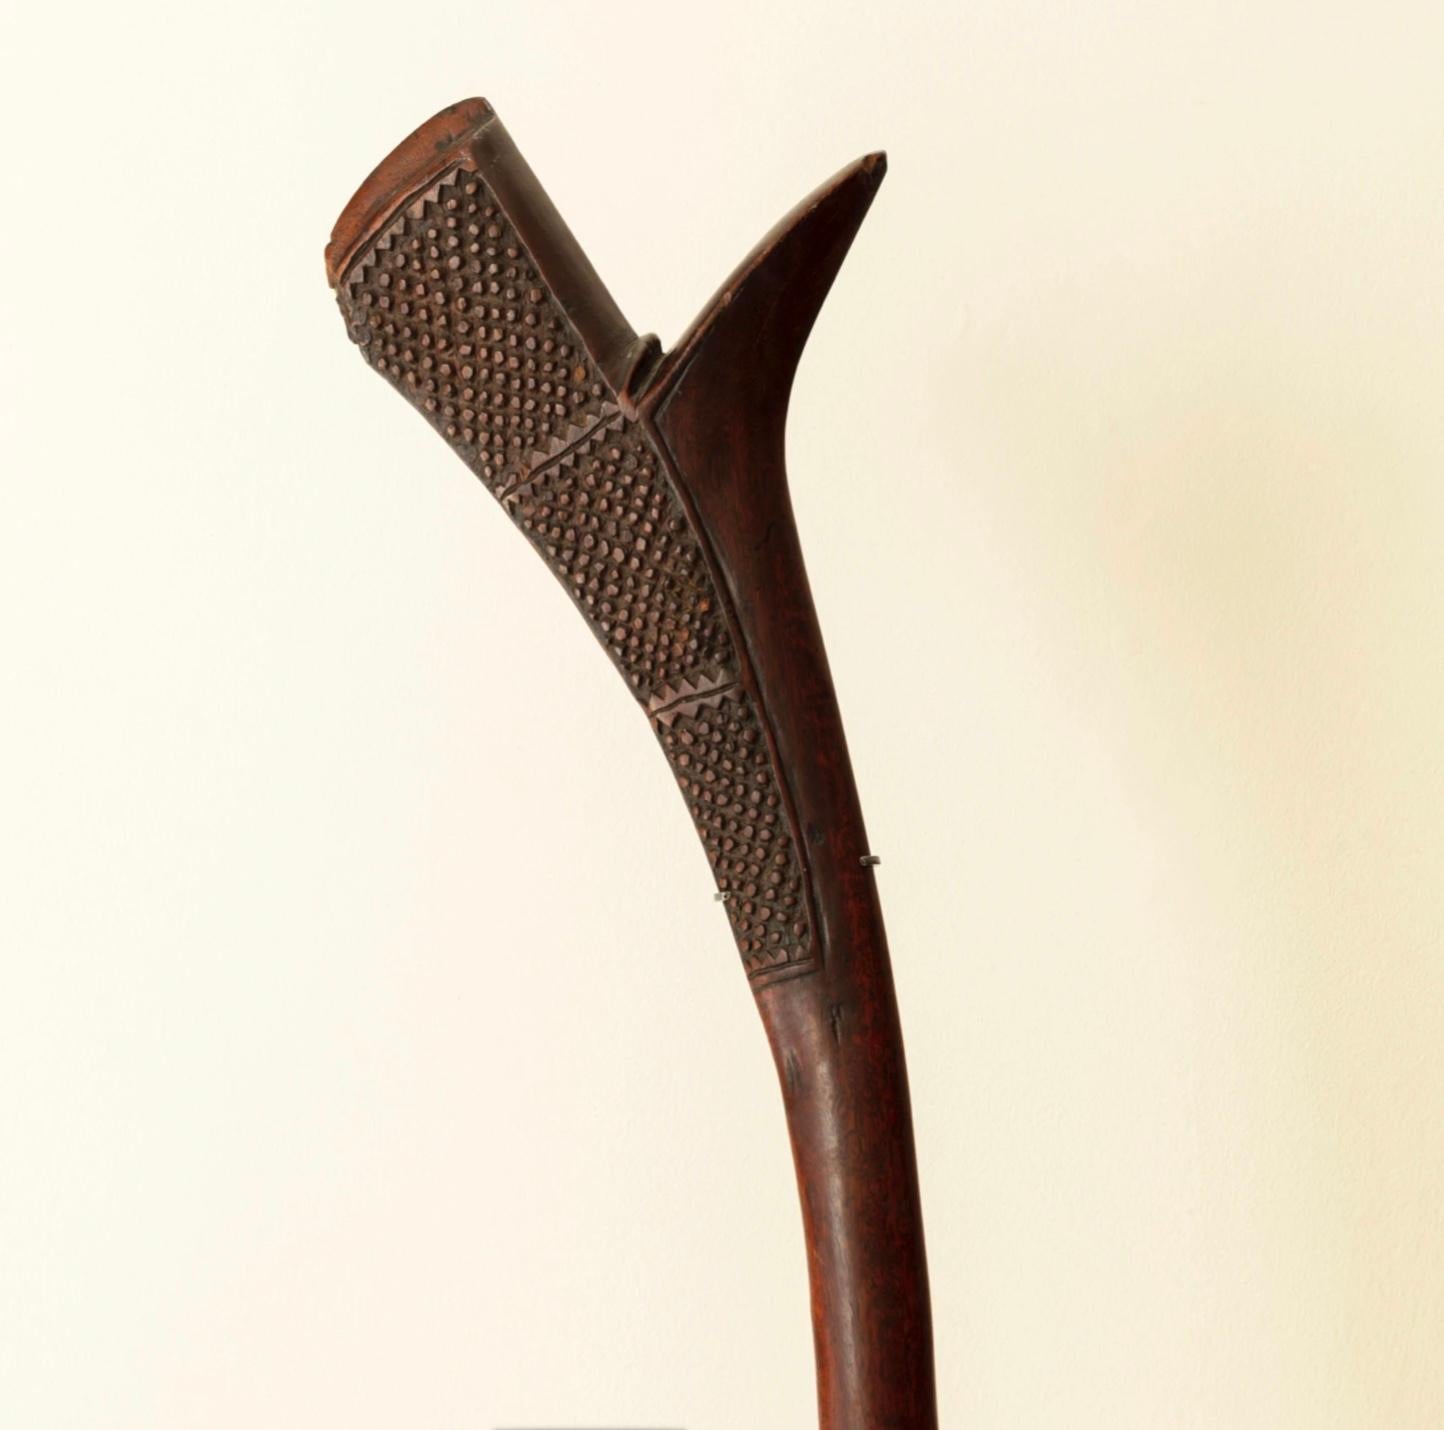 Kriegskeule 'Sali' in Form eines Pistolenstocks. Wurzel aus Eisenholz, geschnitzt mit traditionellen Motiven. Ein ausgezeichnetes Exemplar, montiert auf einem Sonderständer aus patinierter Bronze.

Maße: Höhe 44 cm auf Ständer.

Fidschi, Ende